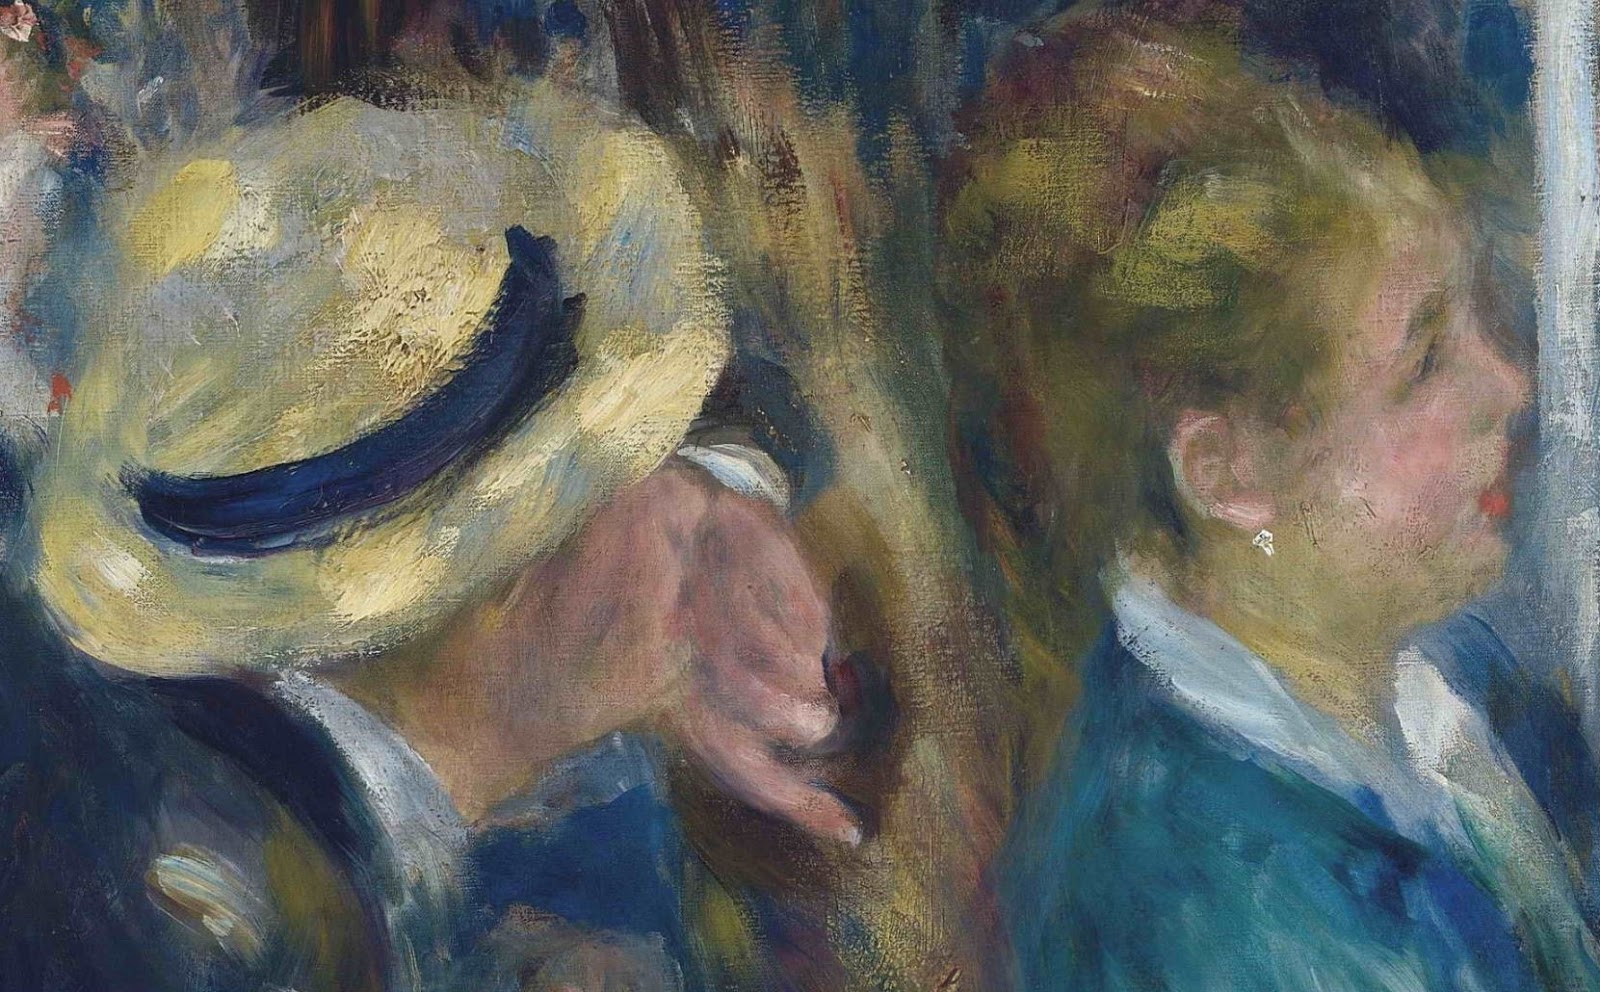 Pierre+Auguste+Renoir-1841-1-19 (446).JPG